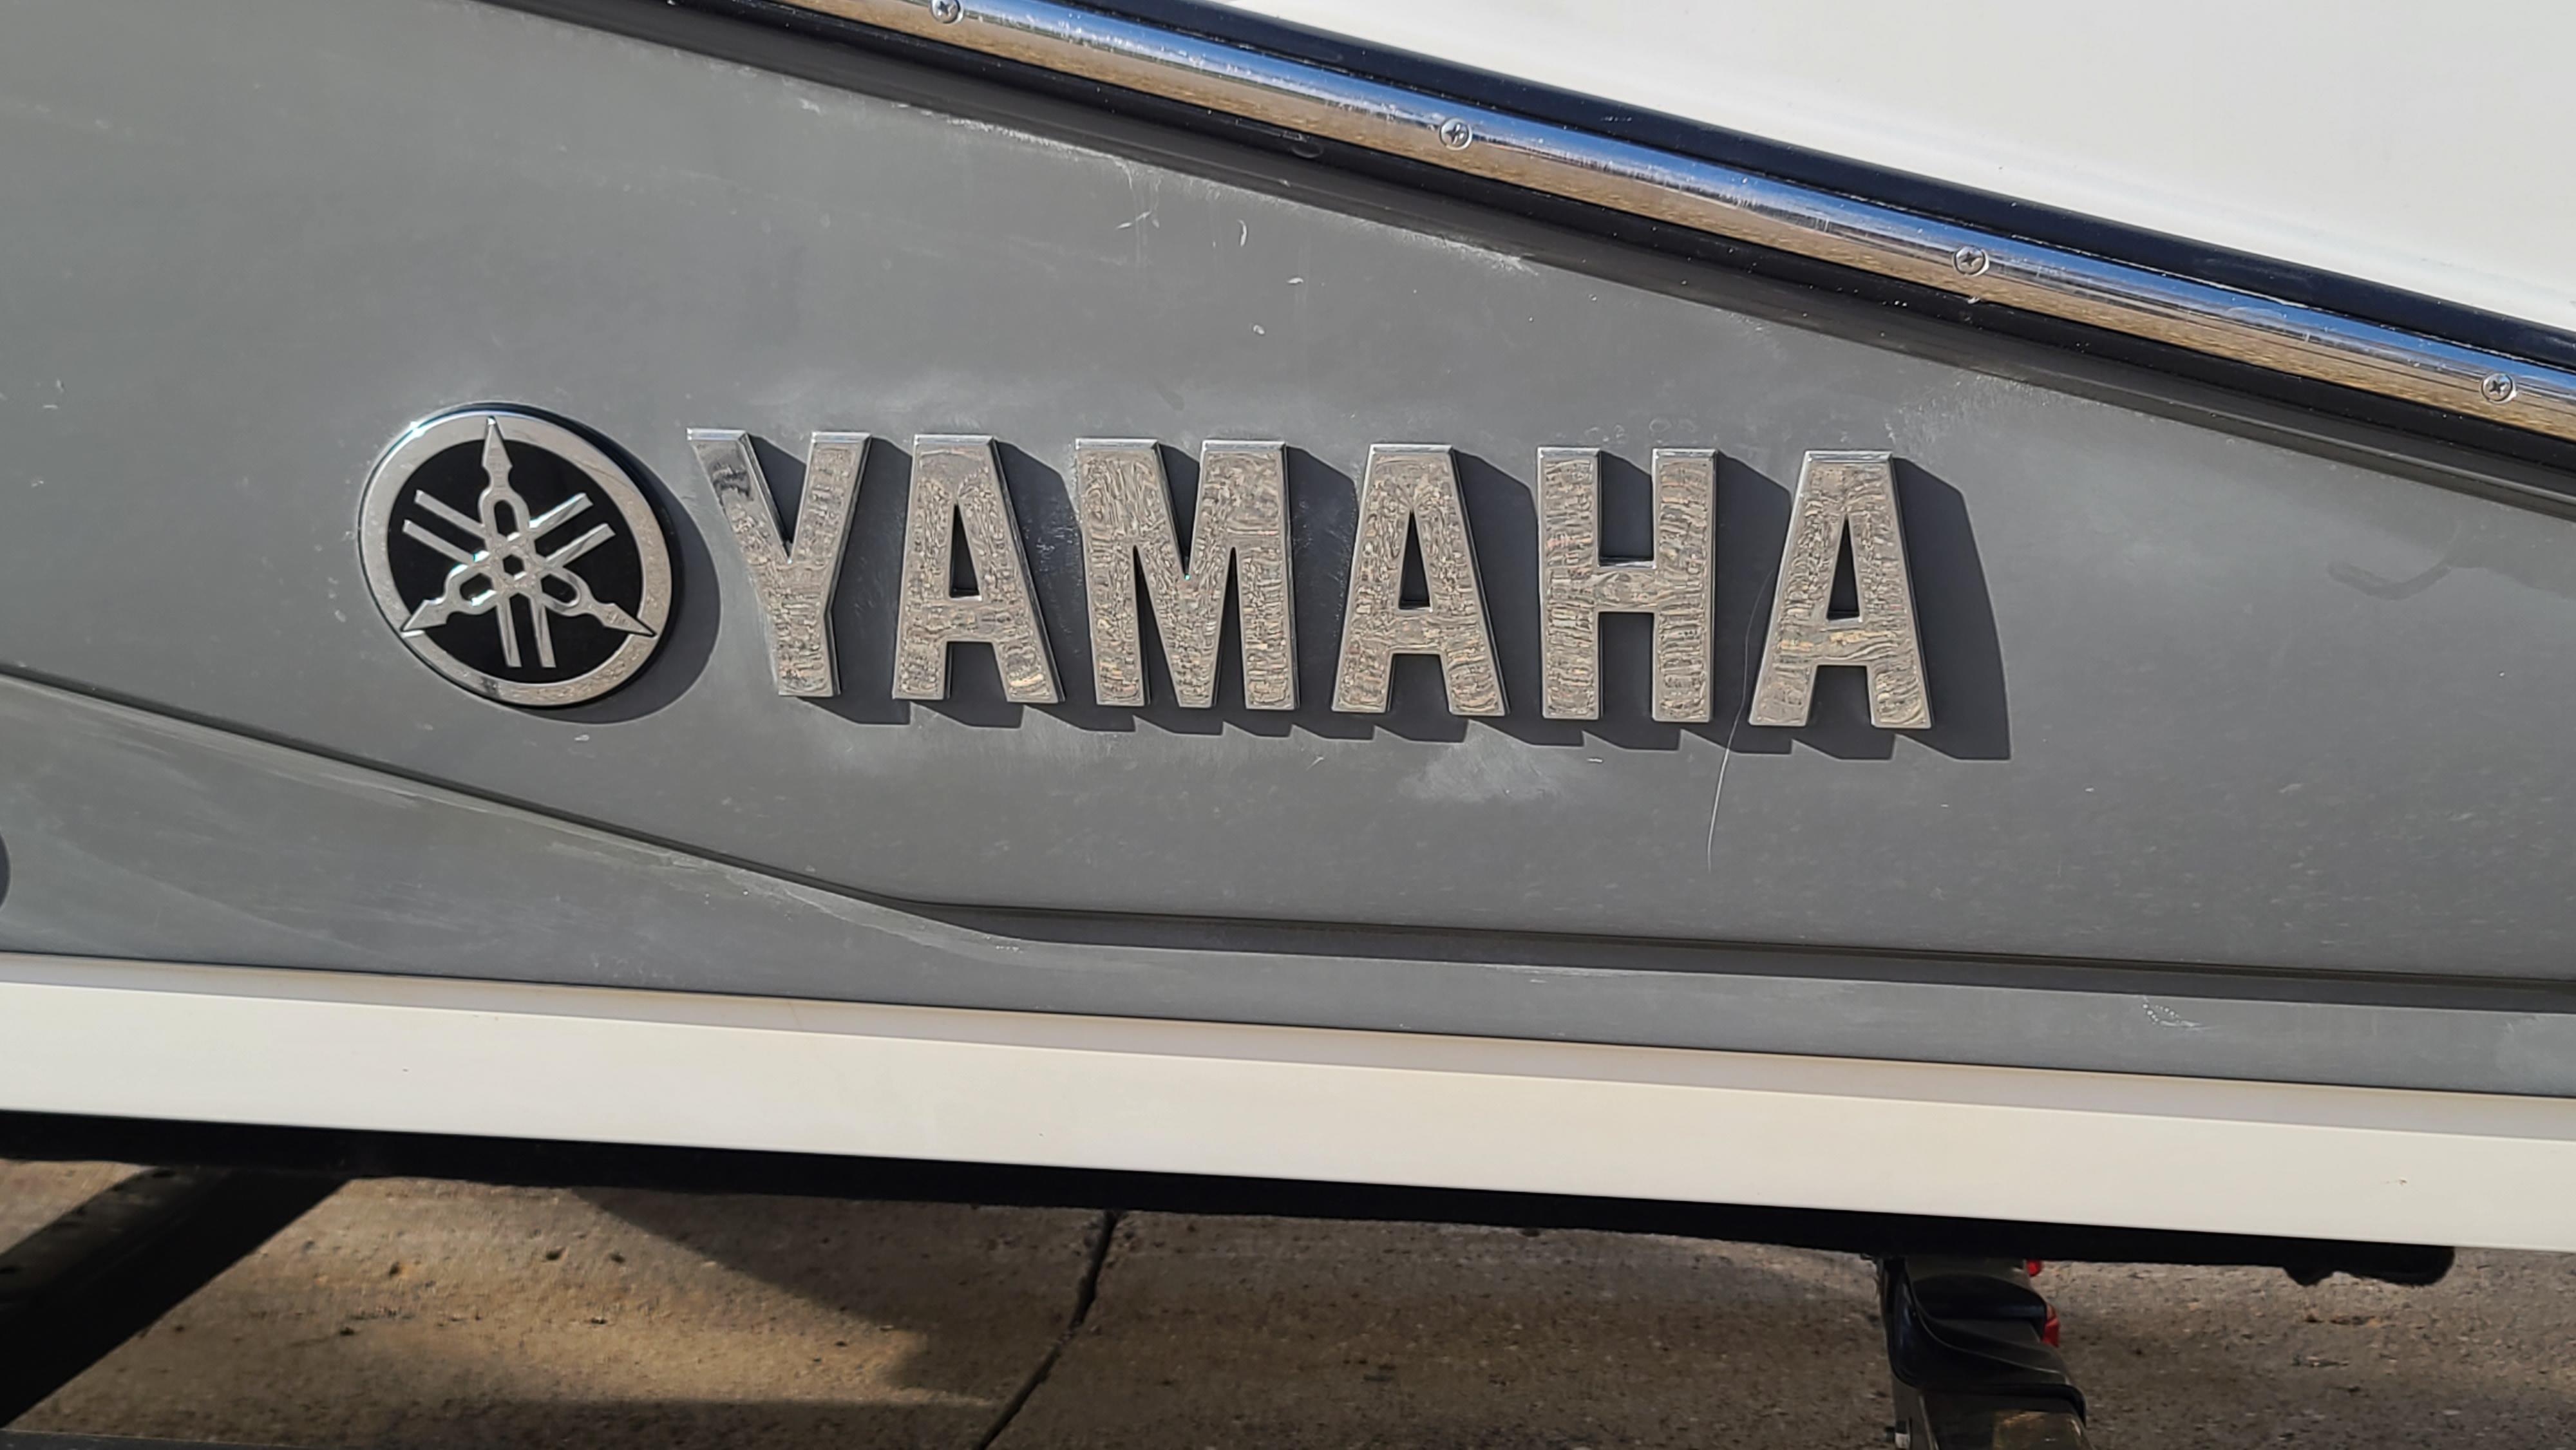 2016 Yamaha Boats 190 FSH Sport